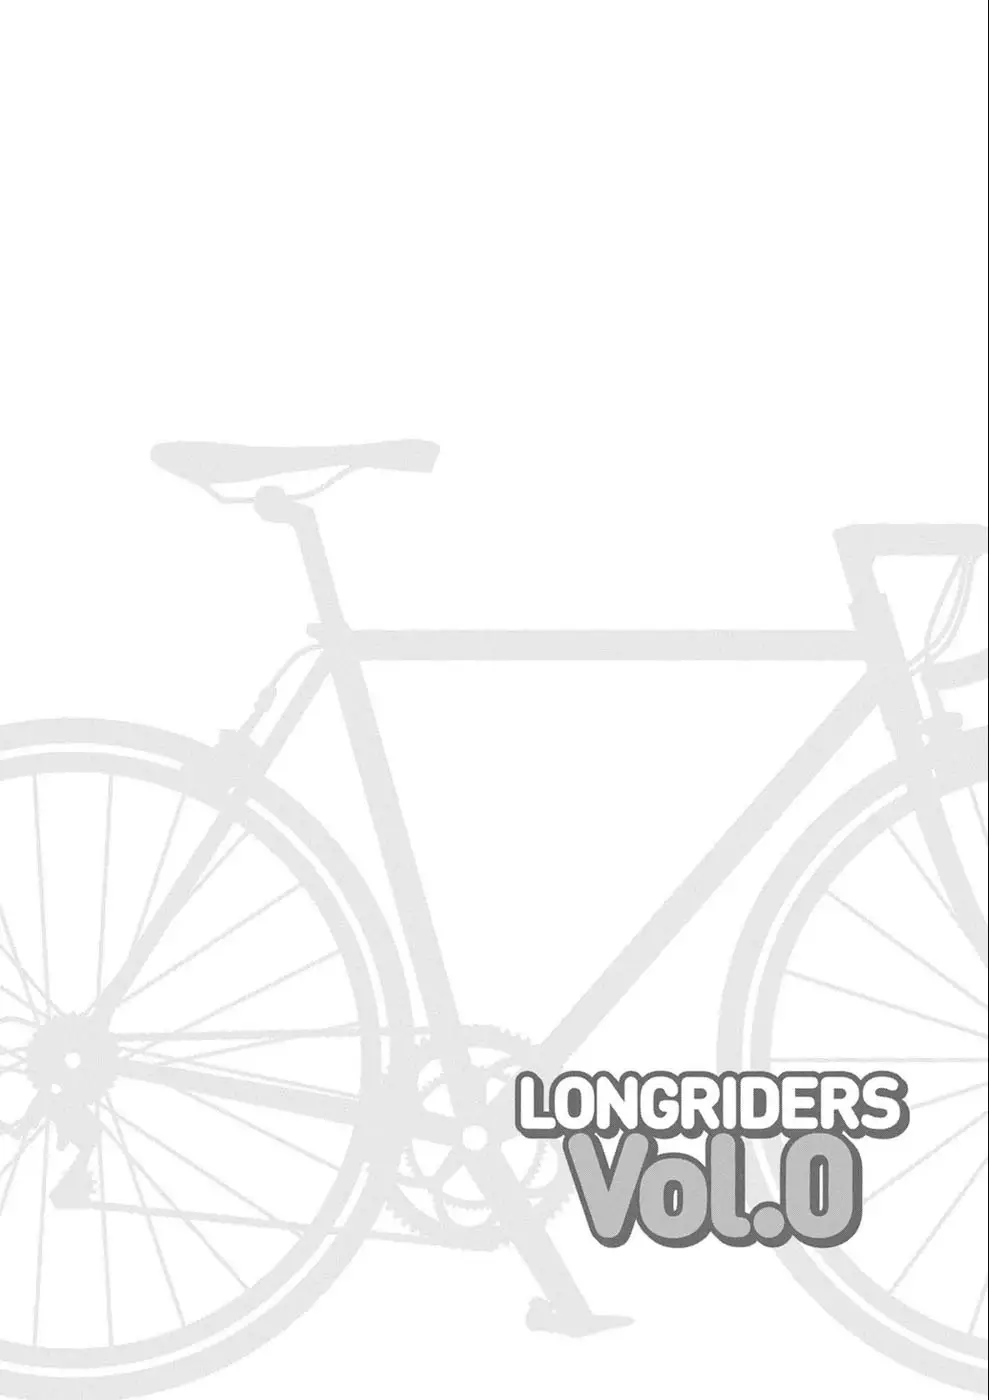 Long Riders! - 22.6 page 2-2e7cce6e